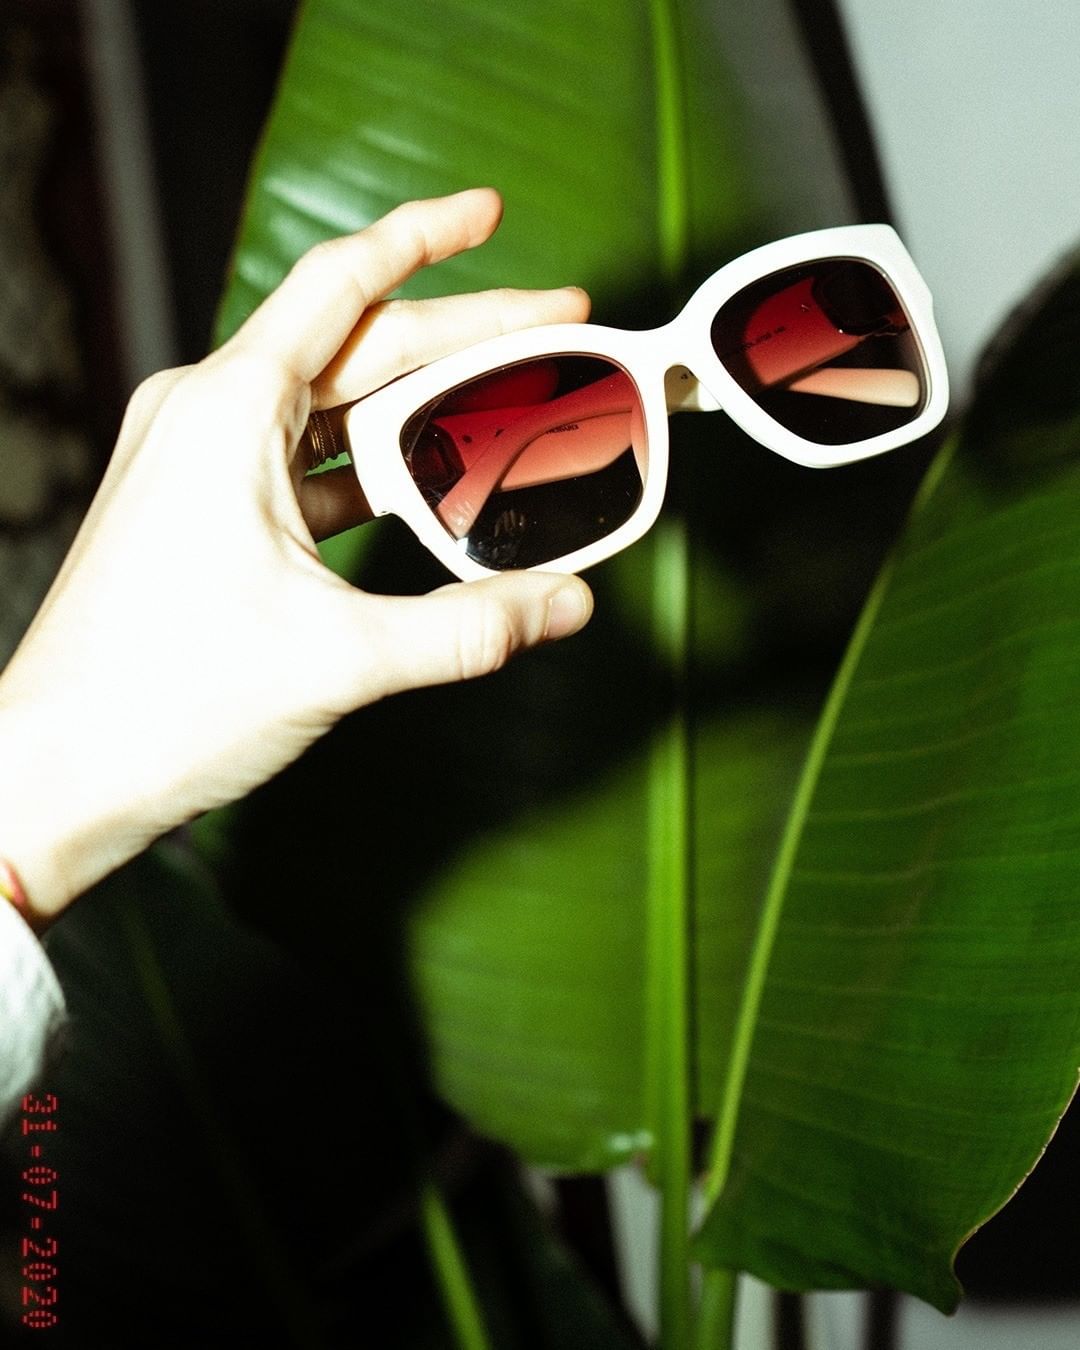 Trussardi - Life in technicolor 🌿  #Trussardi #sunglasses #summer #accessories